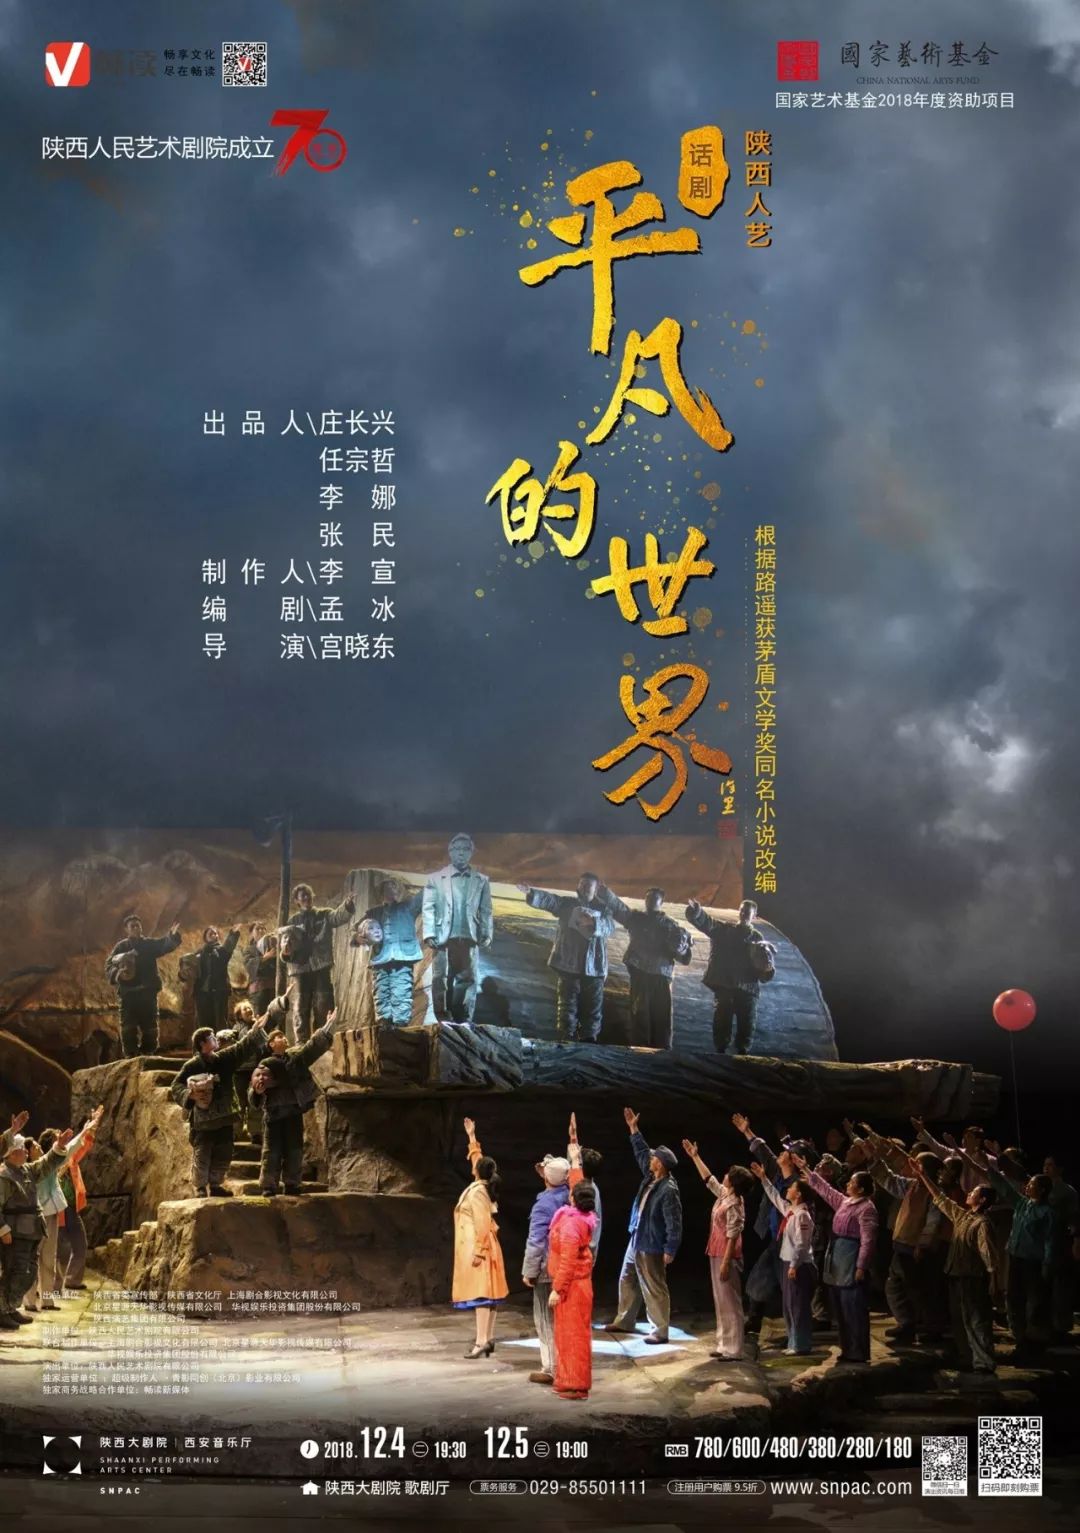 话剧《平凡的世界》将于12月初登陆陕西大剧院 | 如何